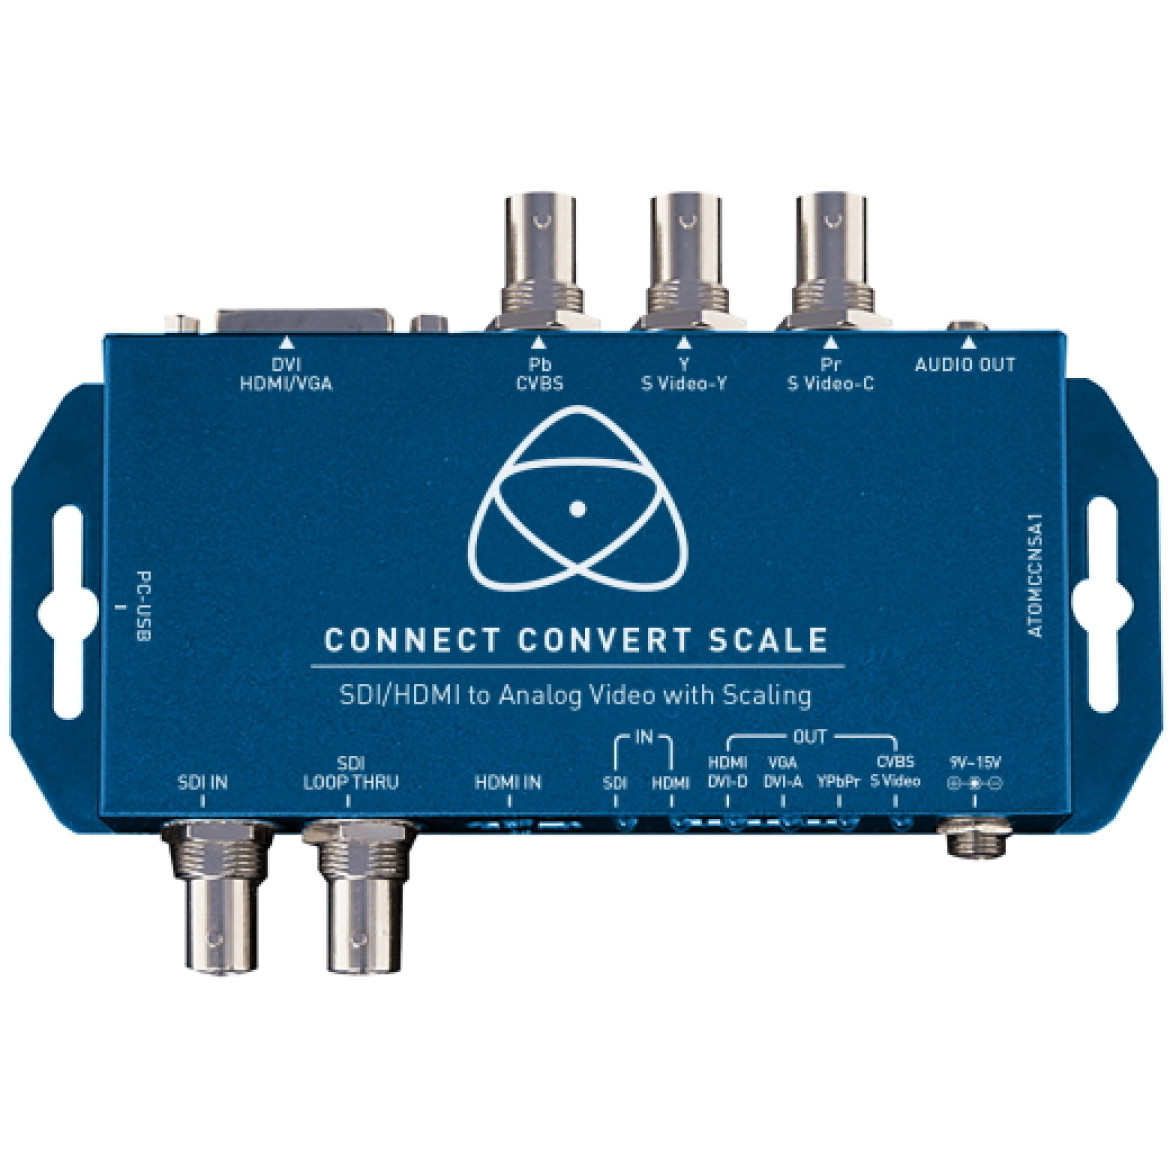 Atomos Connect Converter ATOMCCNSA1 - dzięki niemu połączysz źródła wideo 3G / HD / SD-SDI i HDMI do urządzeń posiadające wejścia Kompozytowe / S-Video, analogowe DVI i komponentowe z rozdzielczością i skalowaniem klatek od SD do HD 1080p60.